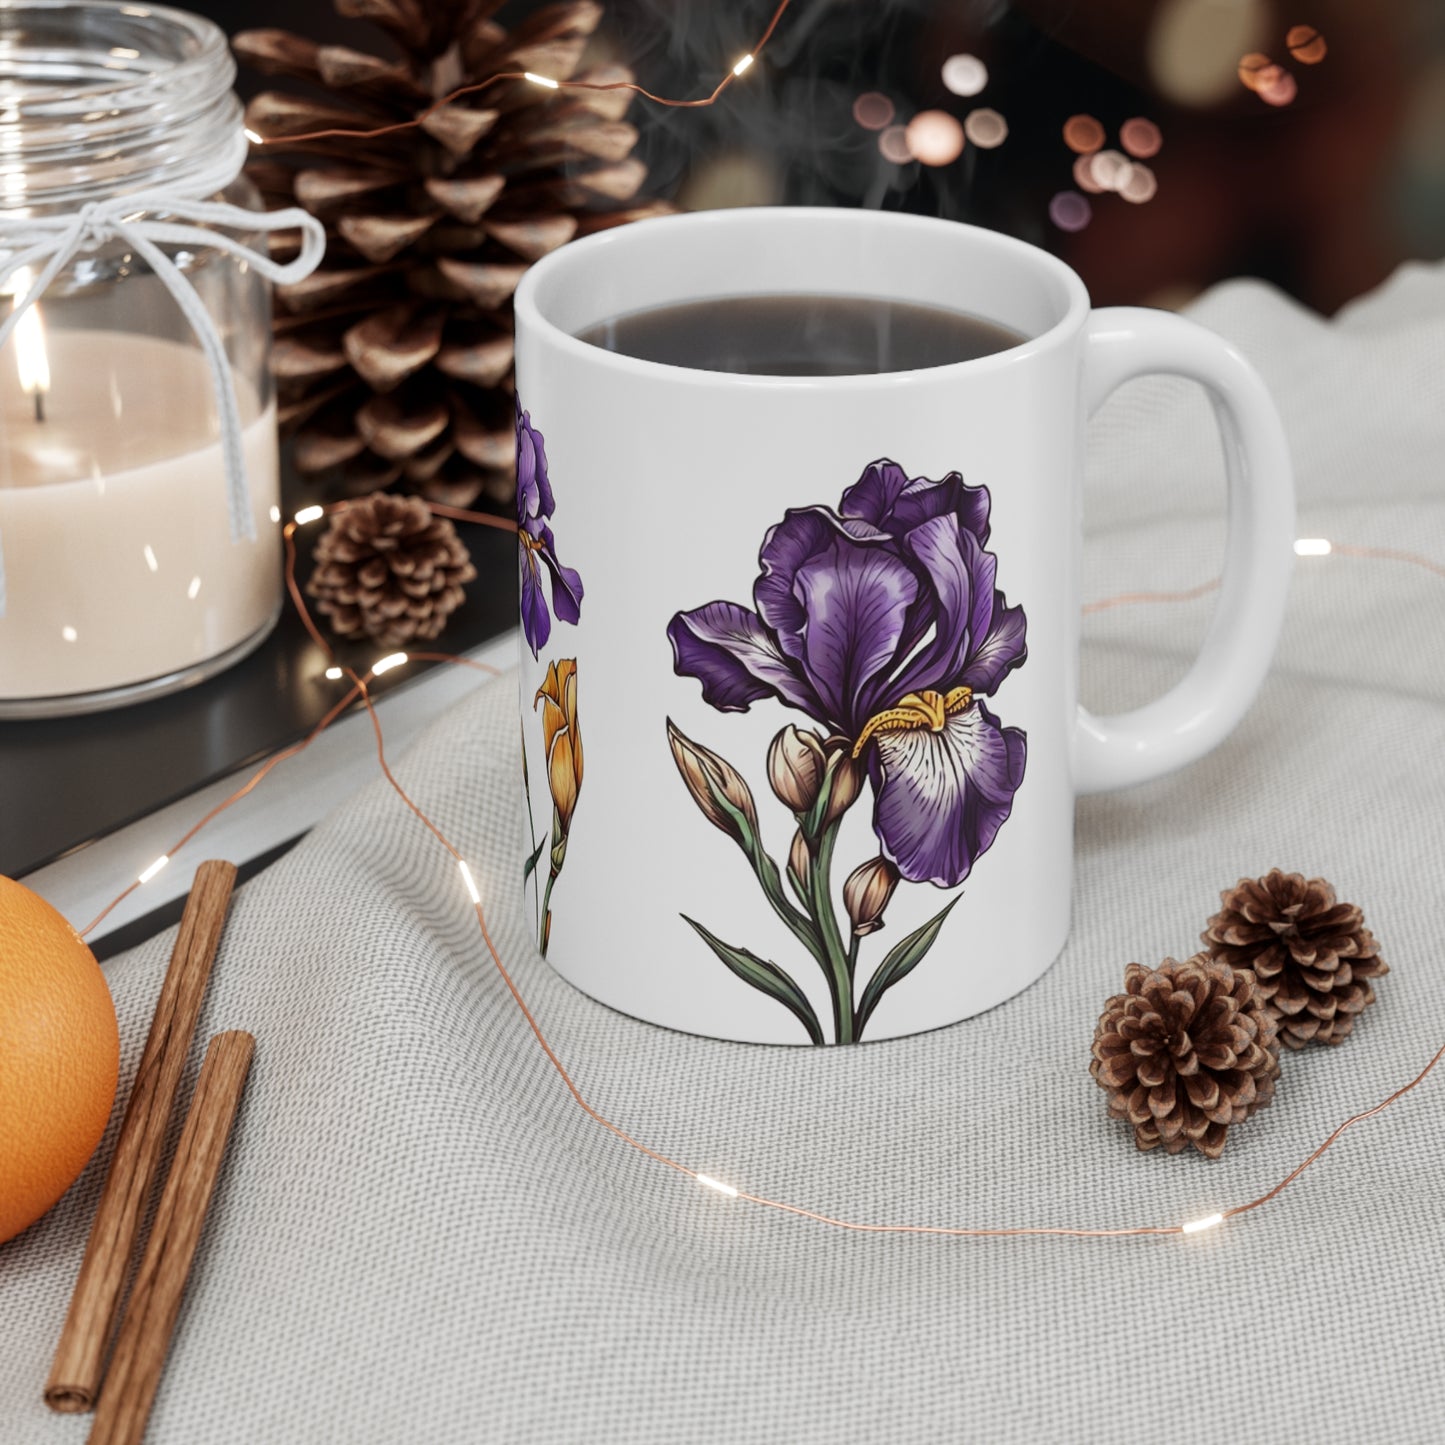 Purple Iris Flower Mug - Ceramic Coffee Mug 11oz